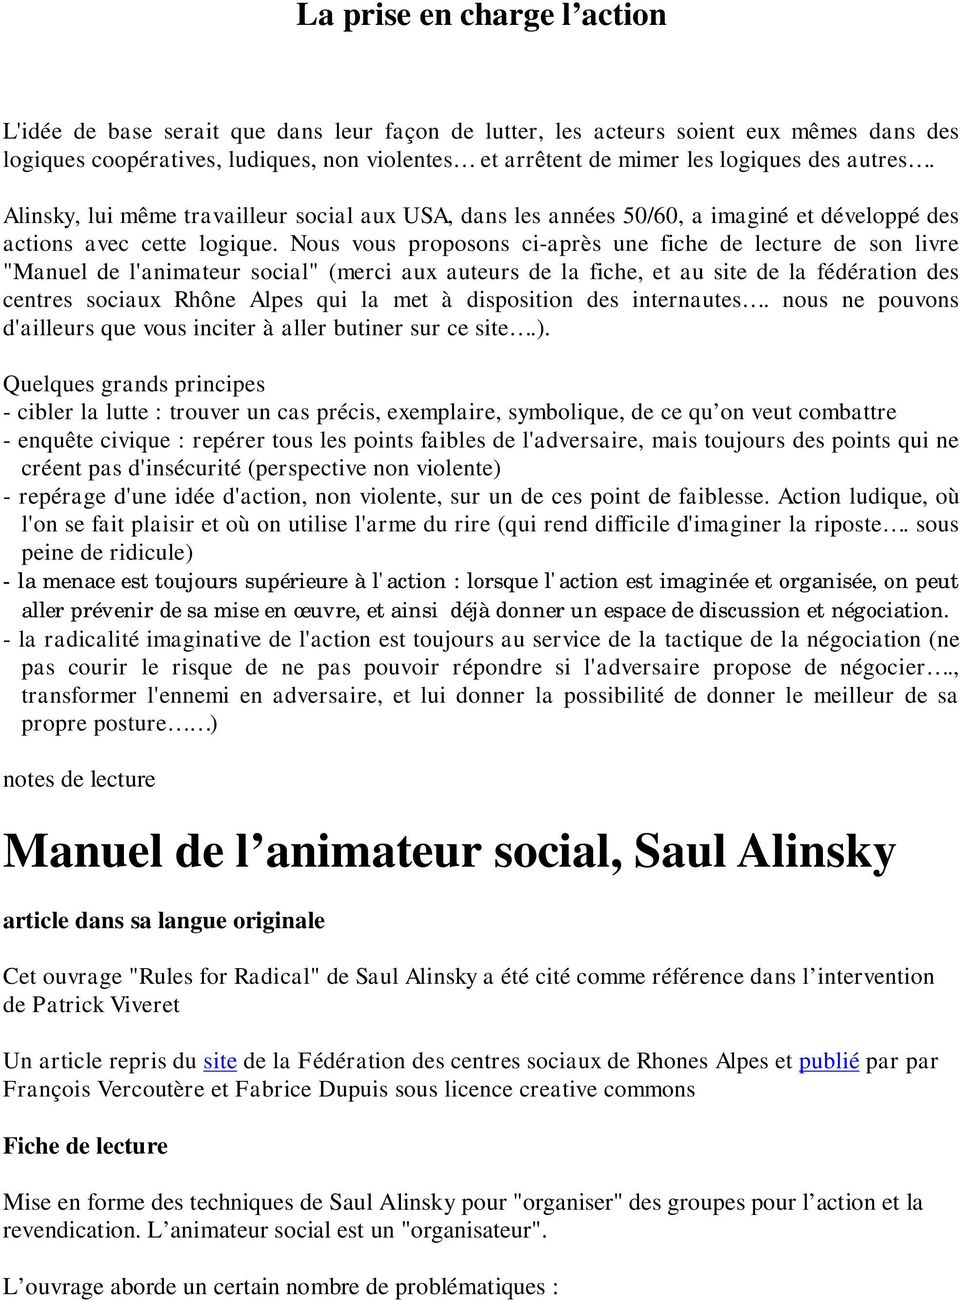 Nous vous proposons ci-après une fiche de lecture de son livre "Manuel de l'animateur social" (merci aux auteurs de la fiche, et au site de la fédération des centres sociaux Rhône Alpes qui la met à